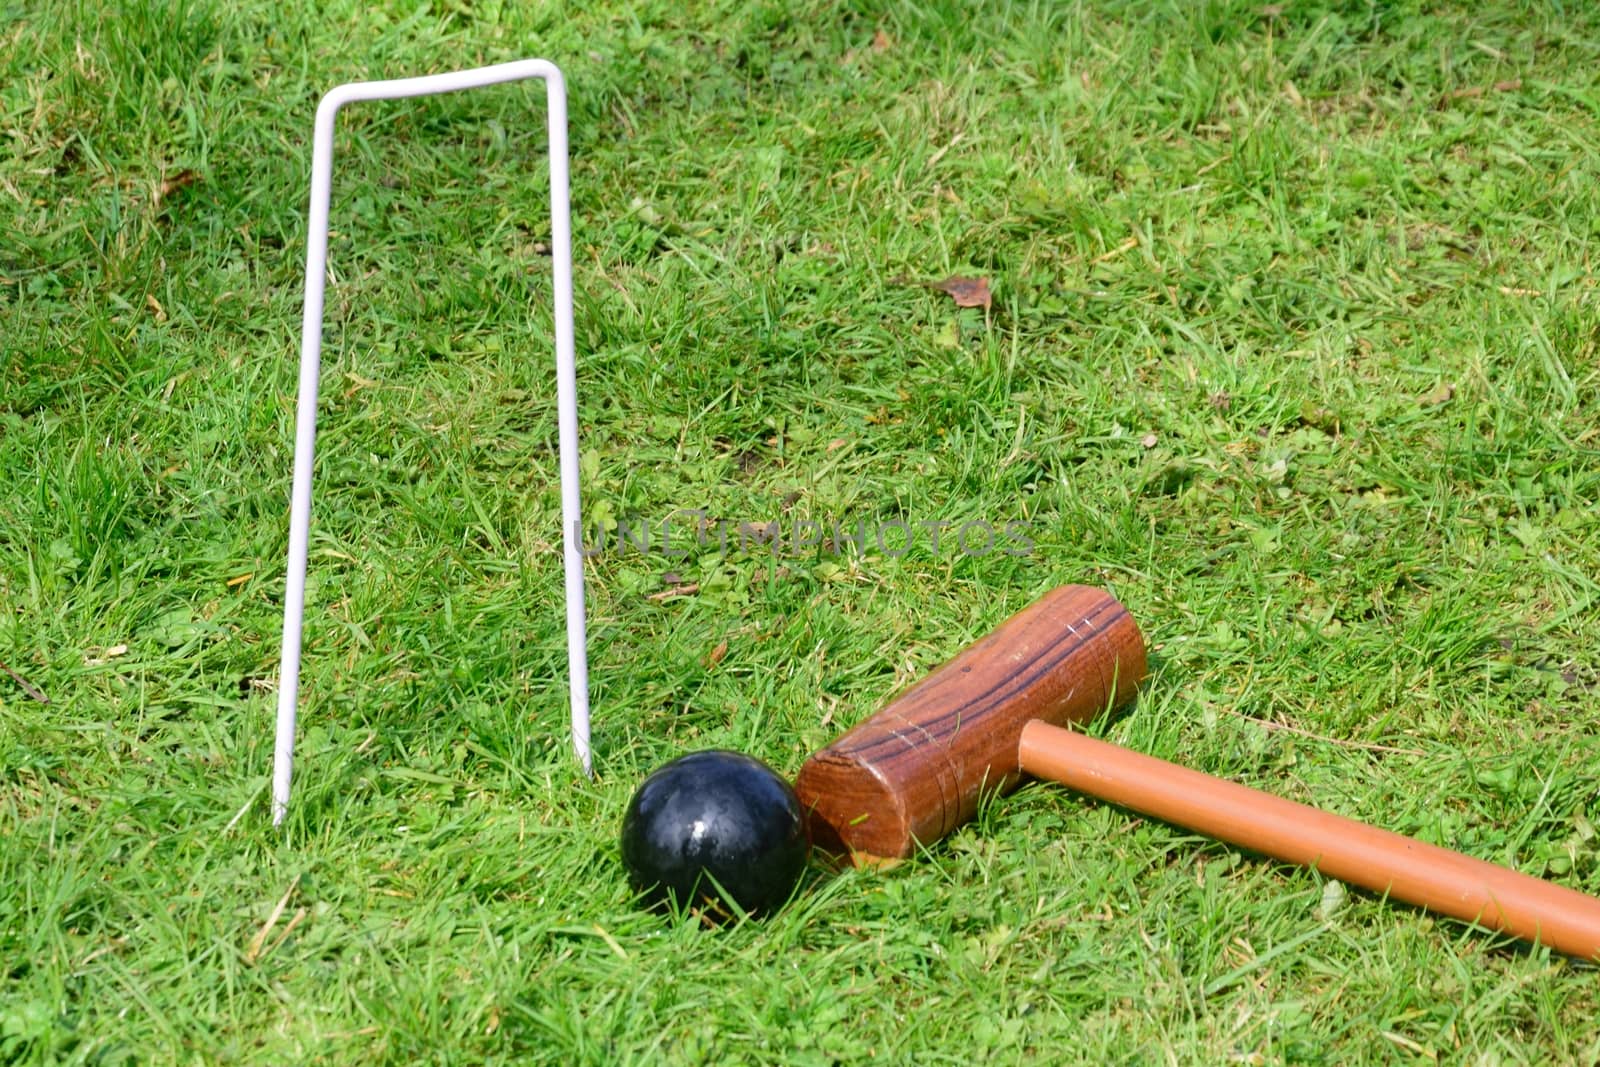 Croquet equipment on ground